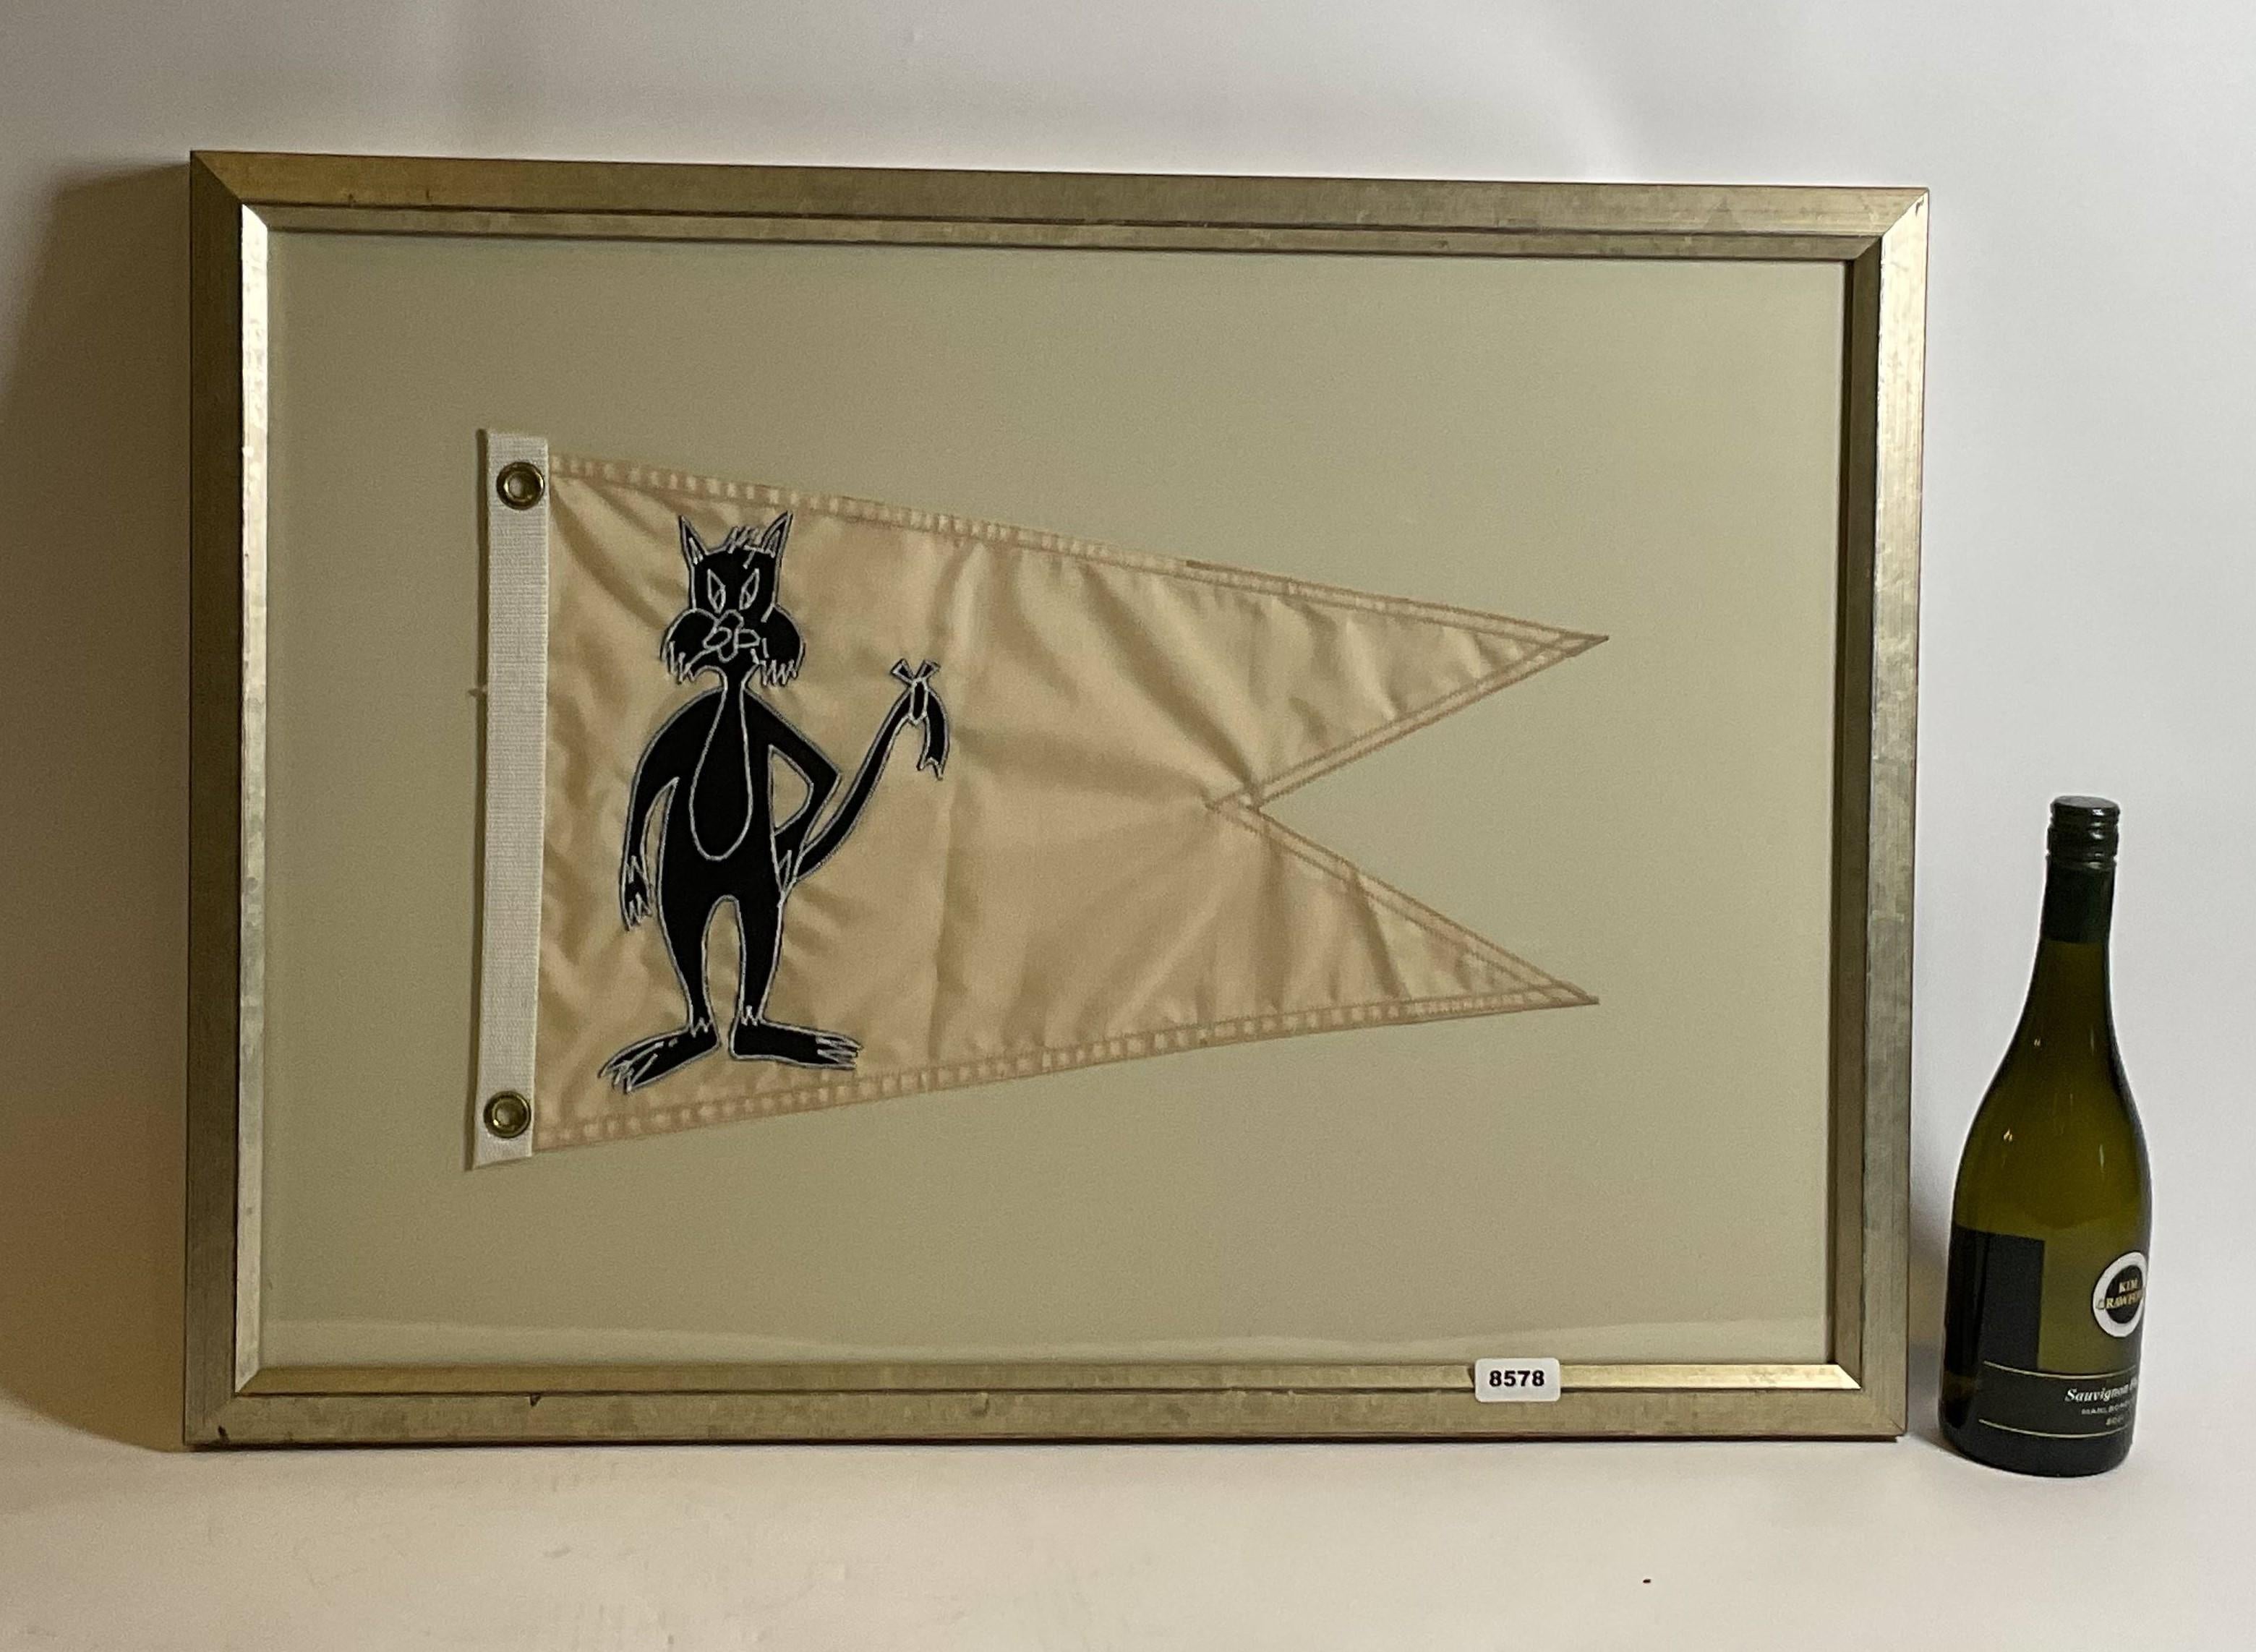 Nautische Burgee-Flagge mit Sylvester, der Katze. Schwalbenschwanzflagge mit starkem Hisswerk und Messingösen. Benutzerdefinierter Rahmen. 

Gewicht: 9 lbs.
Gesamtabmessungen: 22 